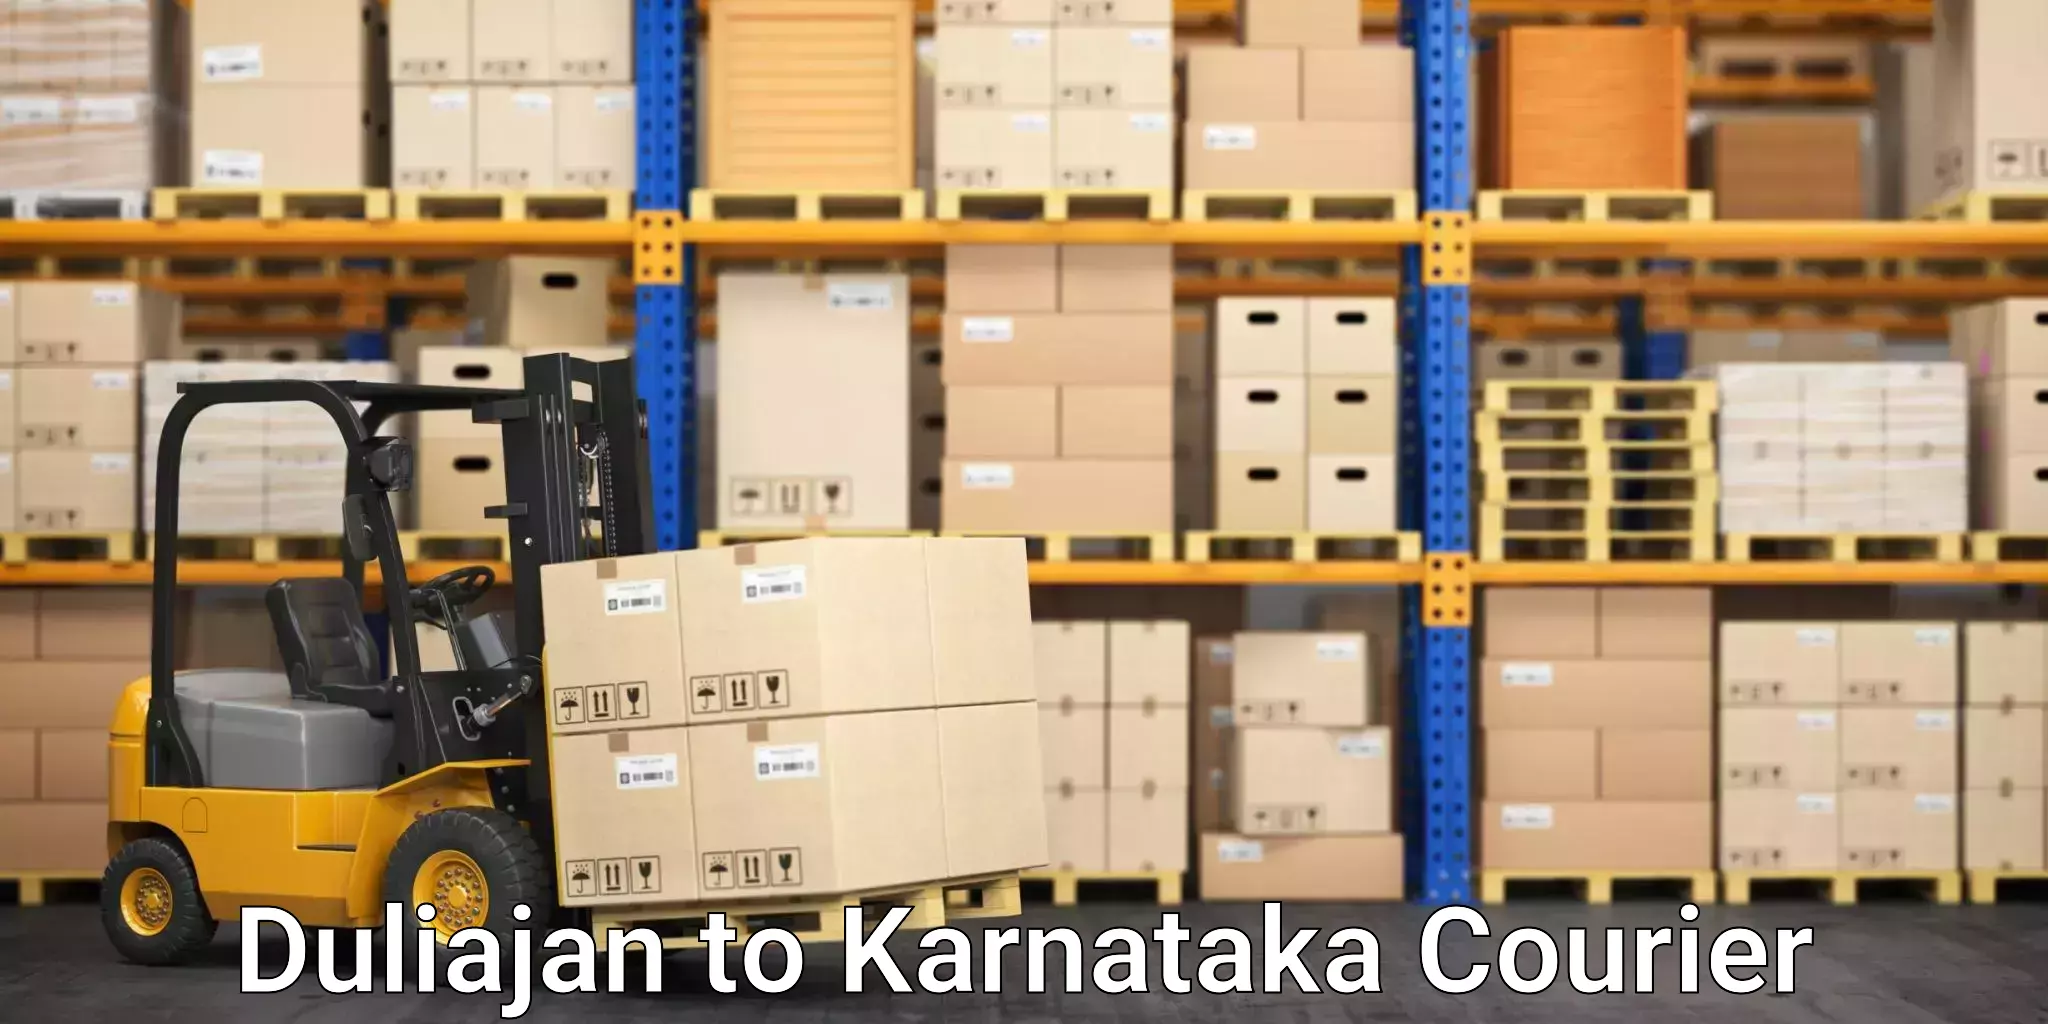 Secure package delivery Duliajan to Uttara Kannada